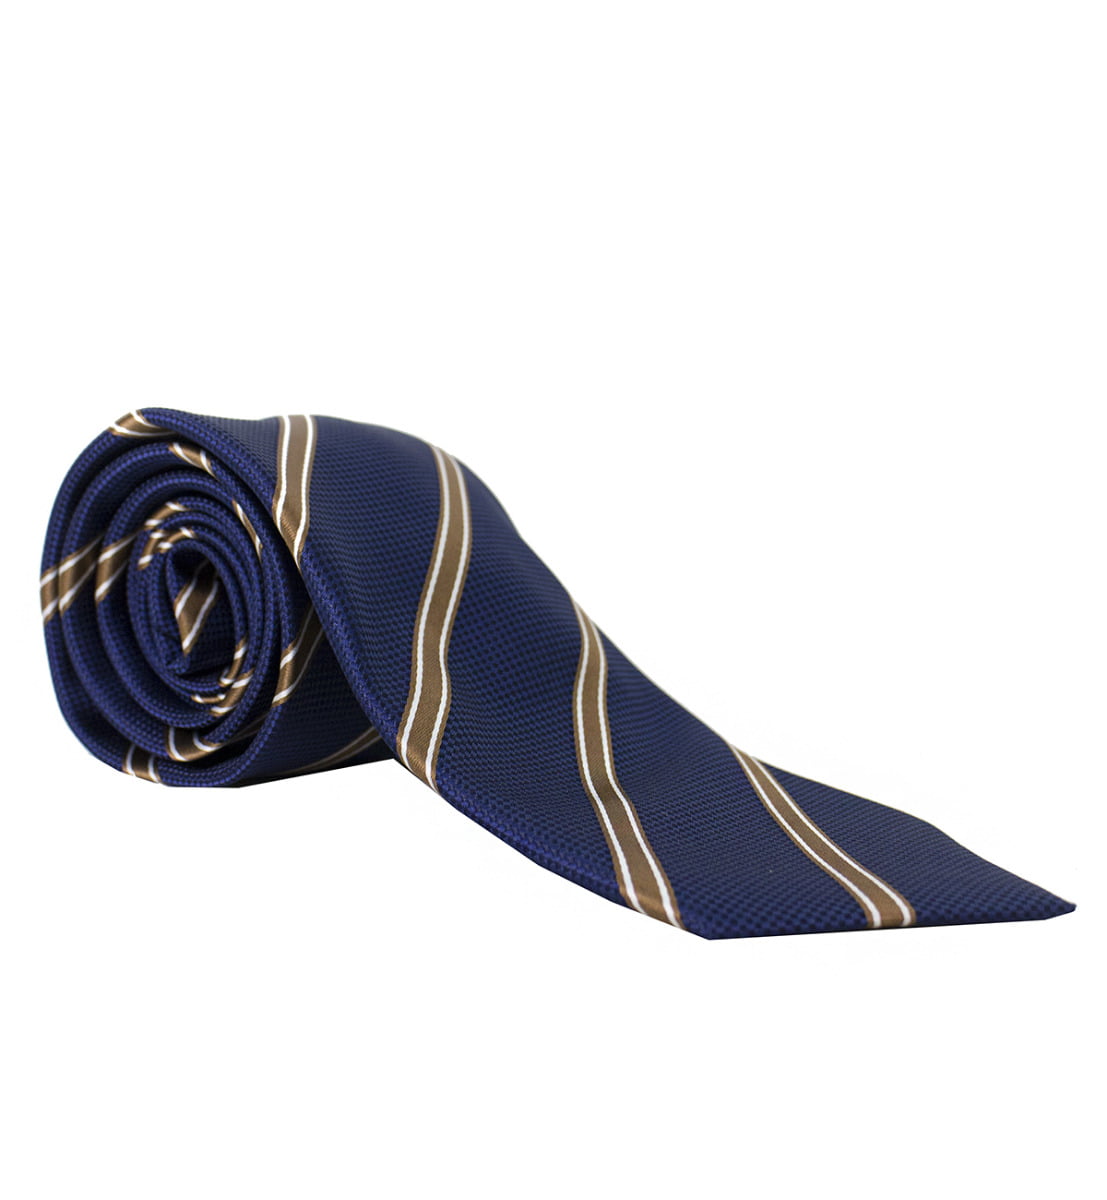 Cravatta uomo blu regimental righe diagonali oro 8cm di larghezza made in italy